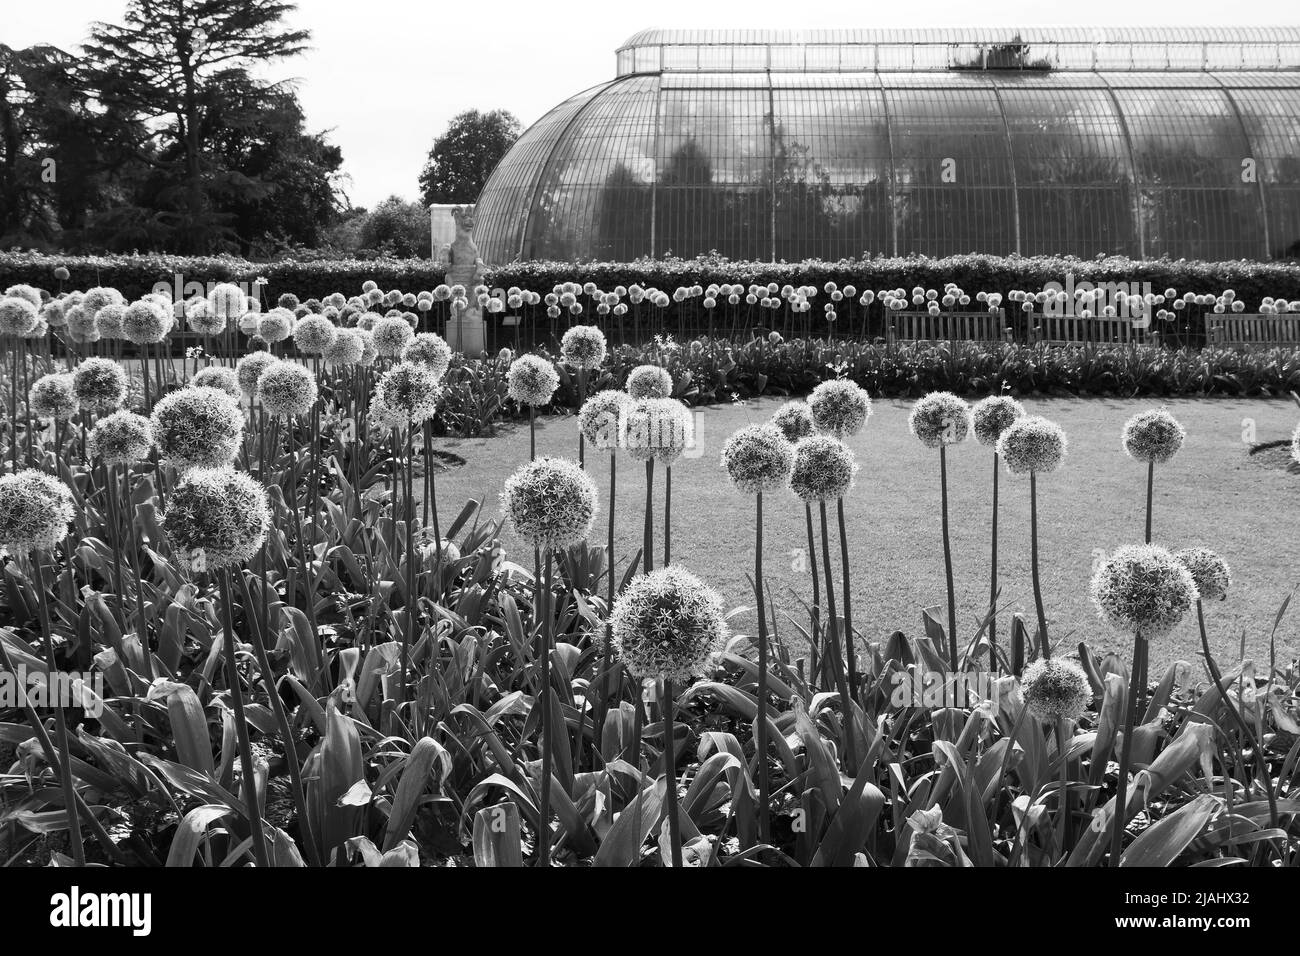 Richmond, Grand Londres, Angleterre, 18 mai 2022: Jardins botaniques royaux Kew. Les fleurs fleurissent au printemps devant le Palm House. Monochrome Banque D'Images